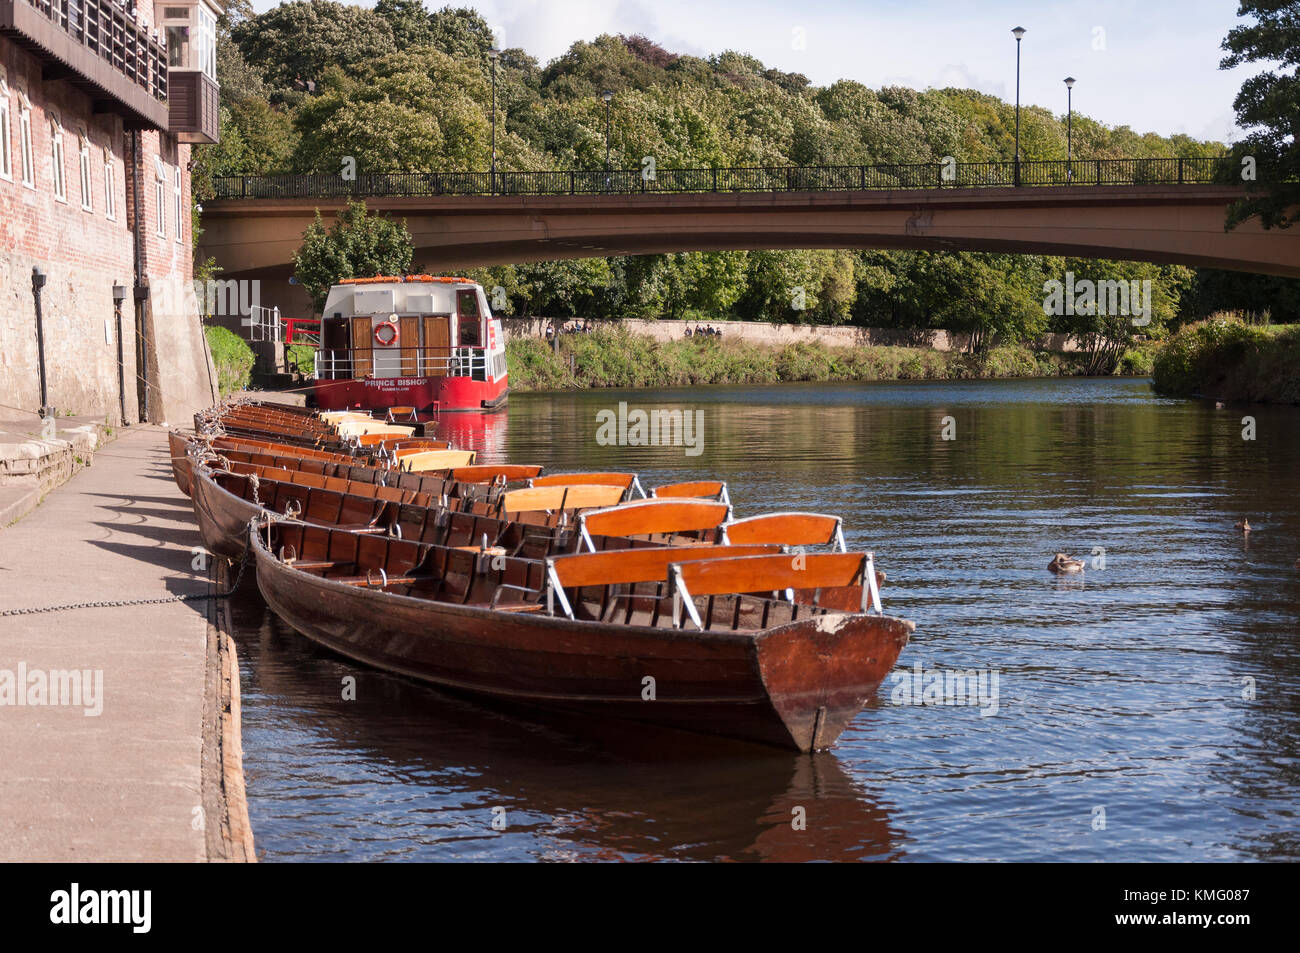 Freude, Cruiser, und rudern Boote auf der Bank am Fluss Wear bei Durham Stadt in der Grafschaft Durham, North East England. Stockfoto